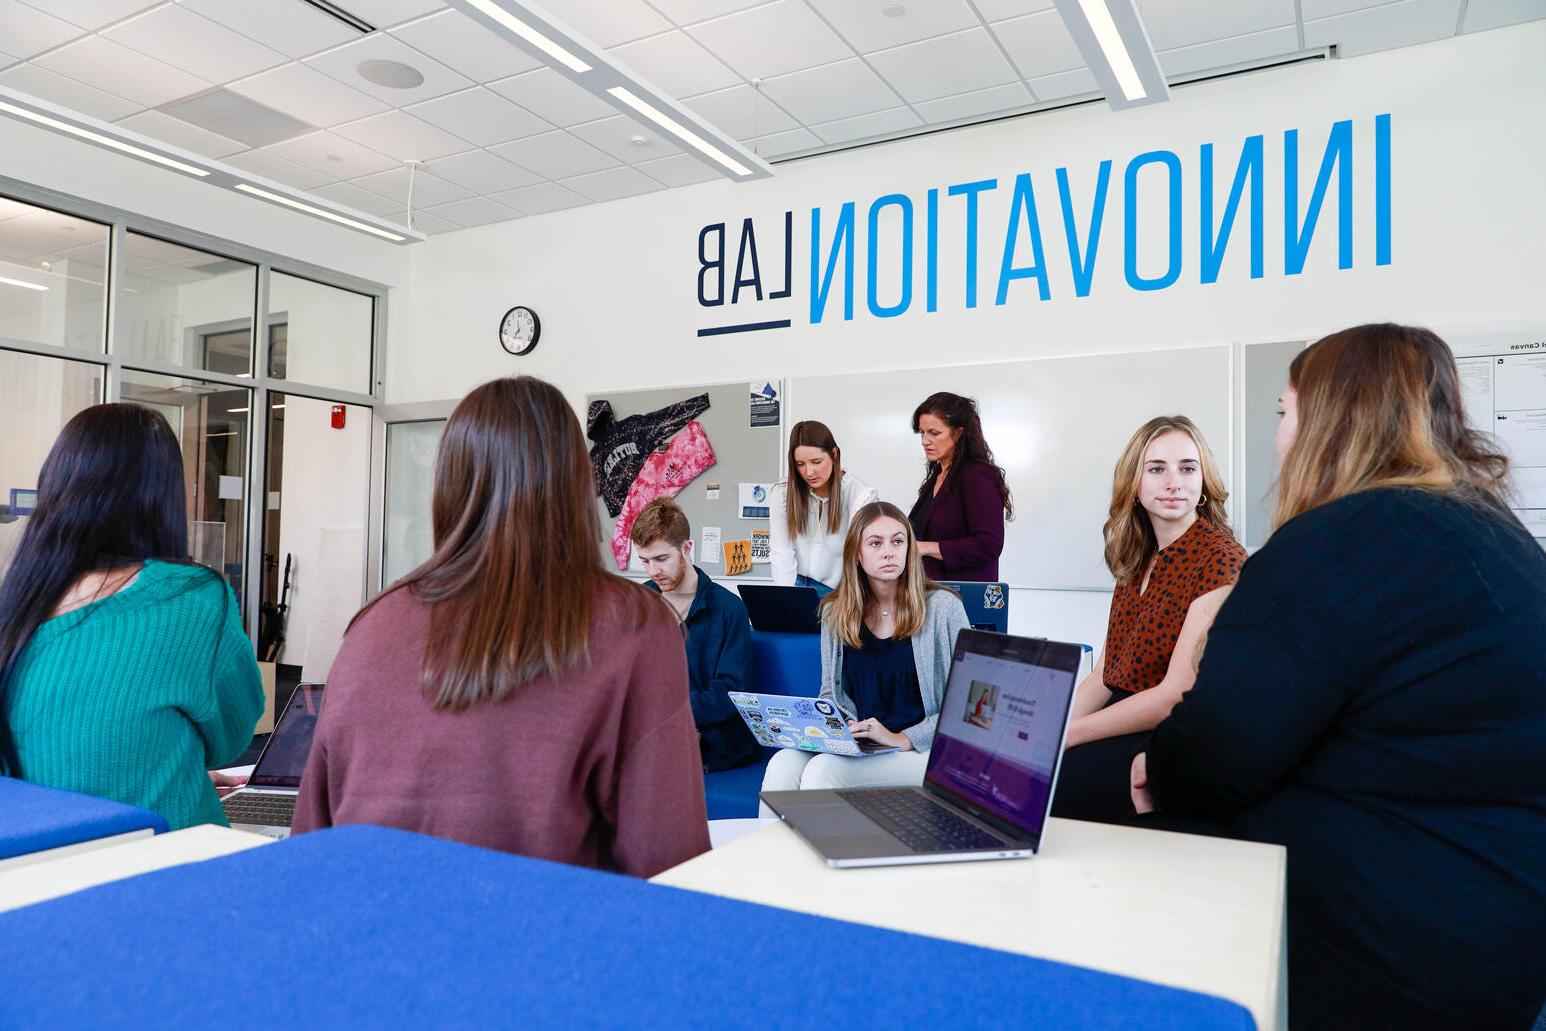 男女学生坐在蓝色和白色的座位上. 创新实验室印在白墙上